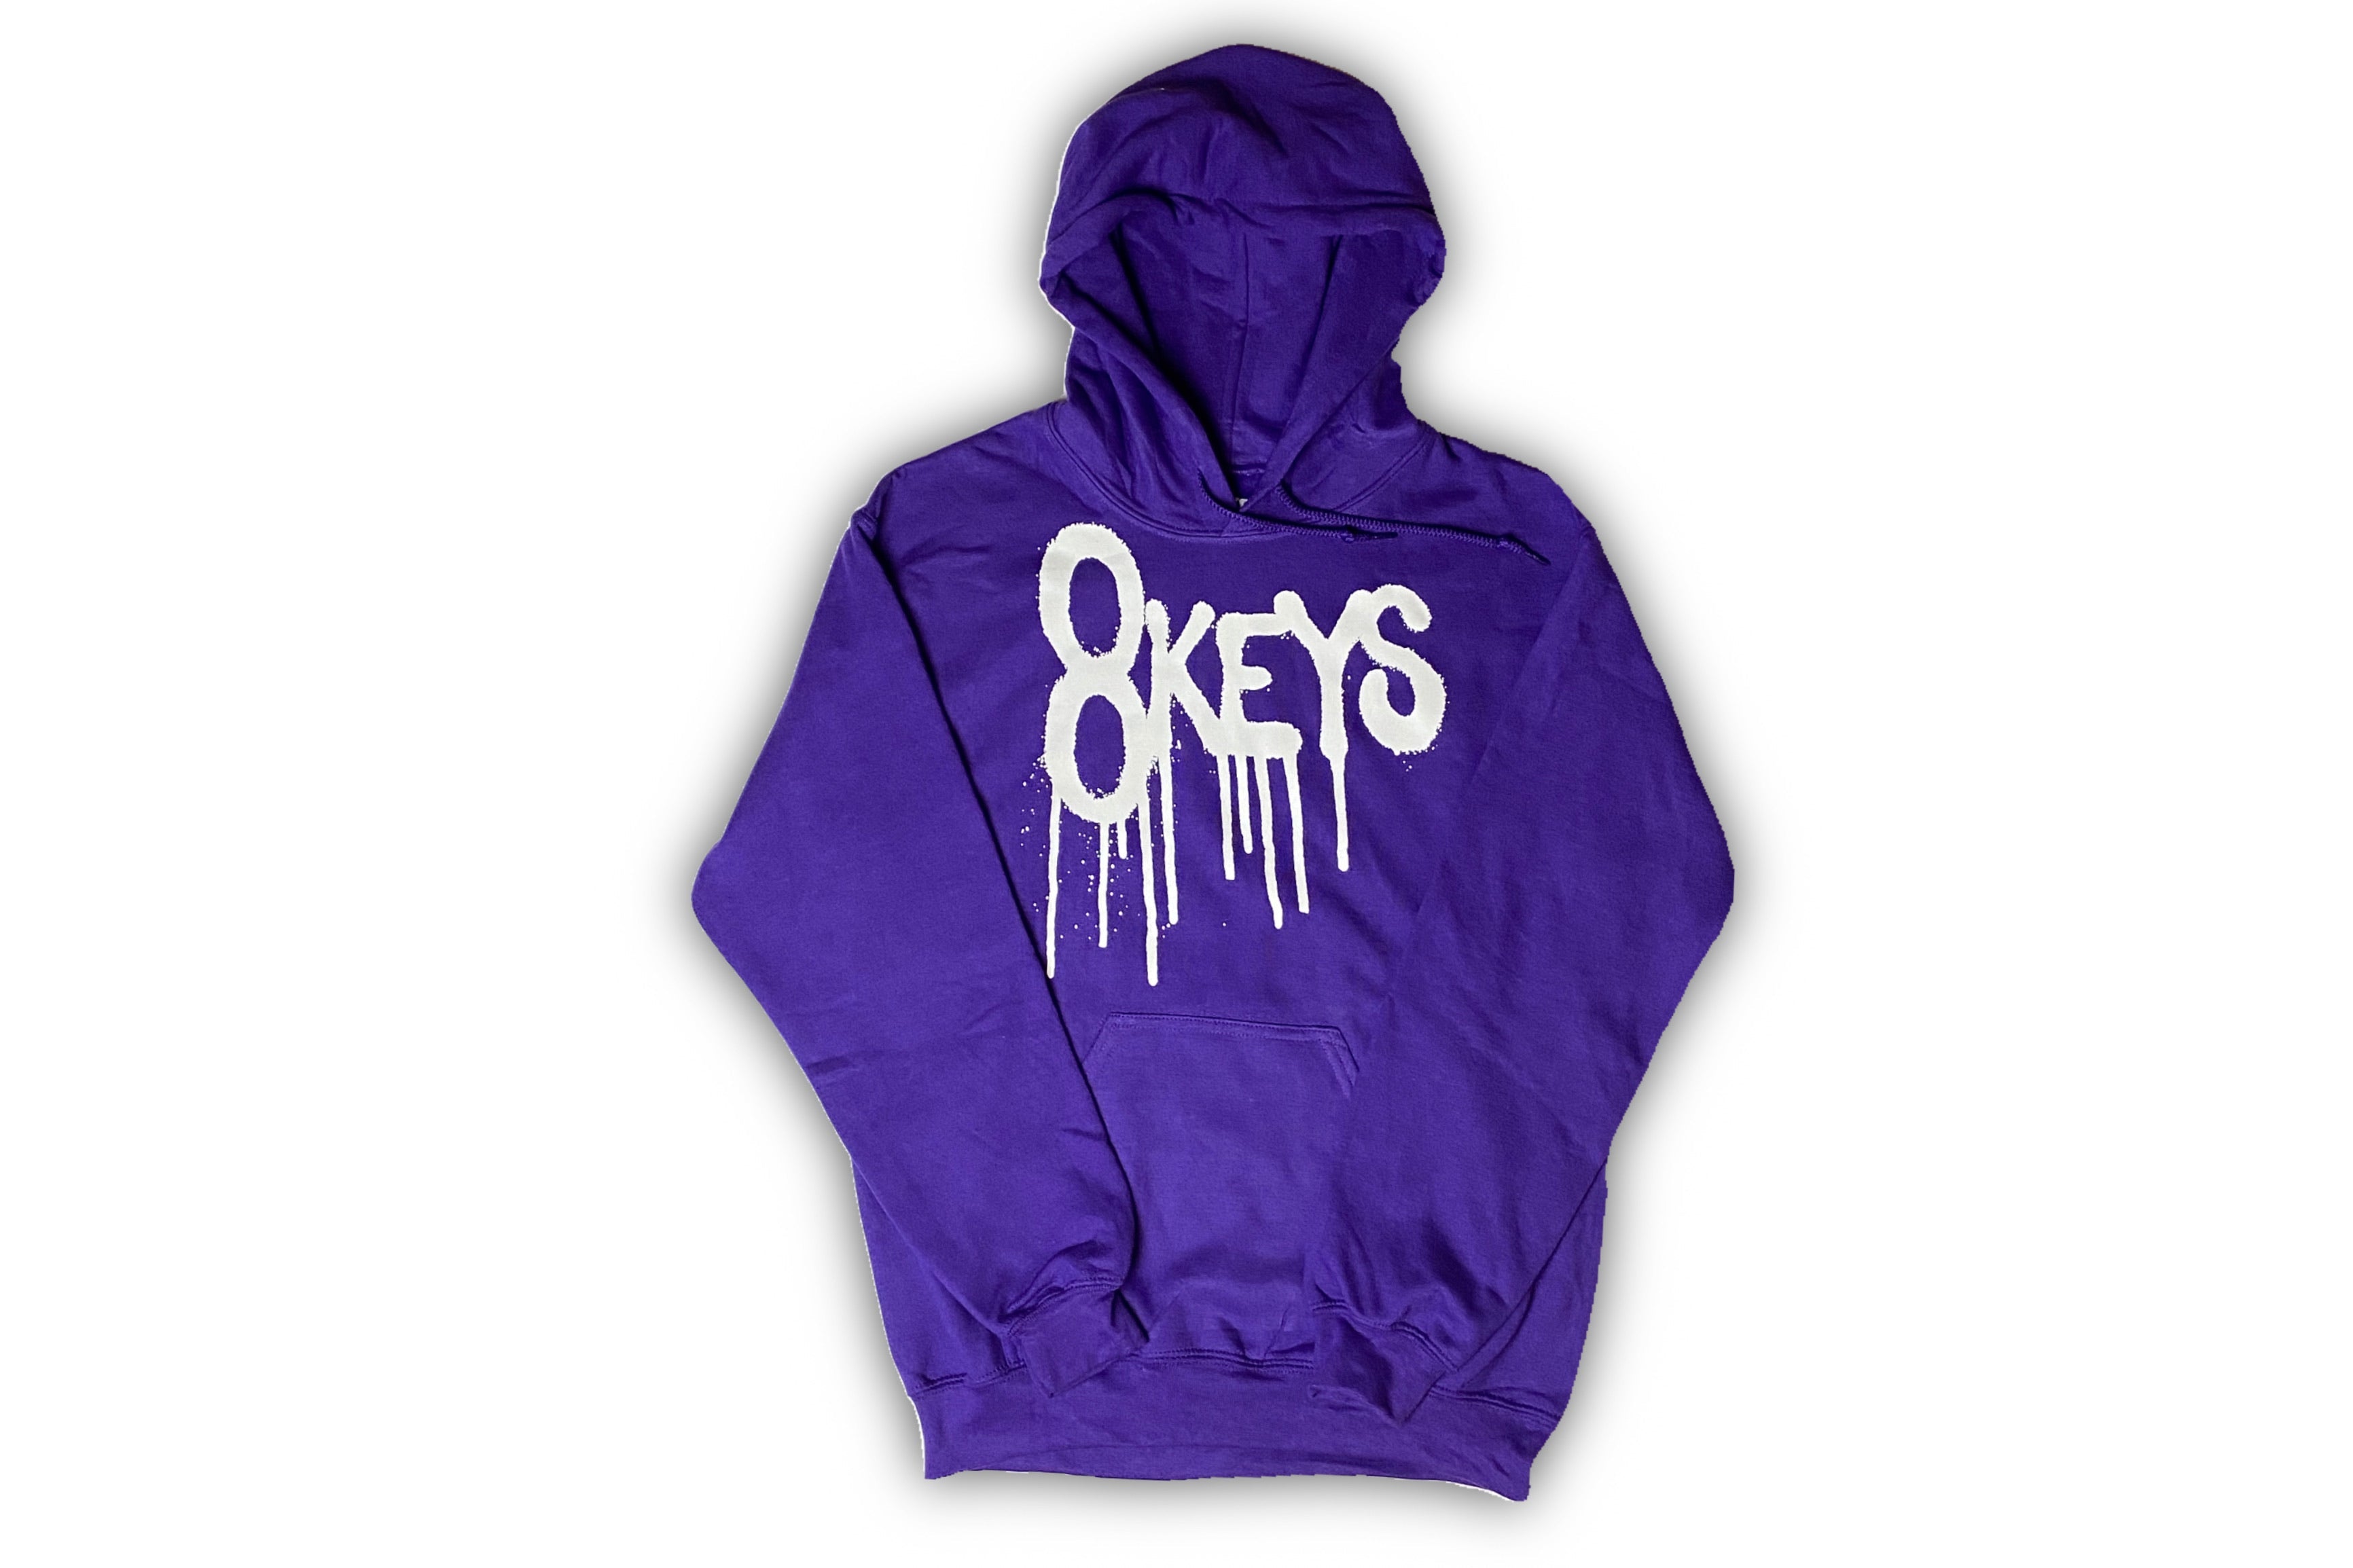 8keys drip hoodie purple